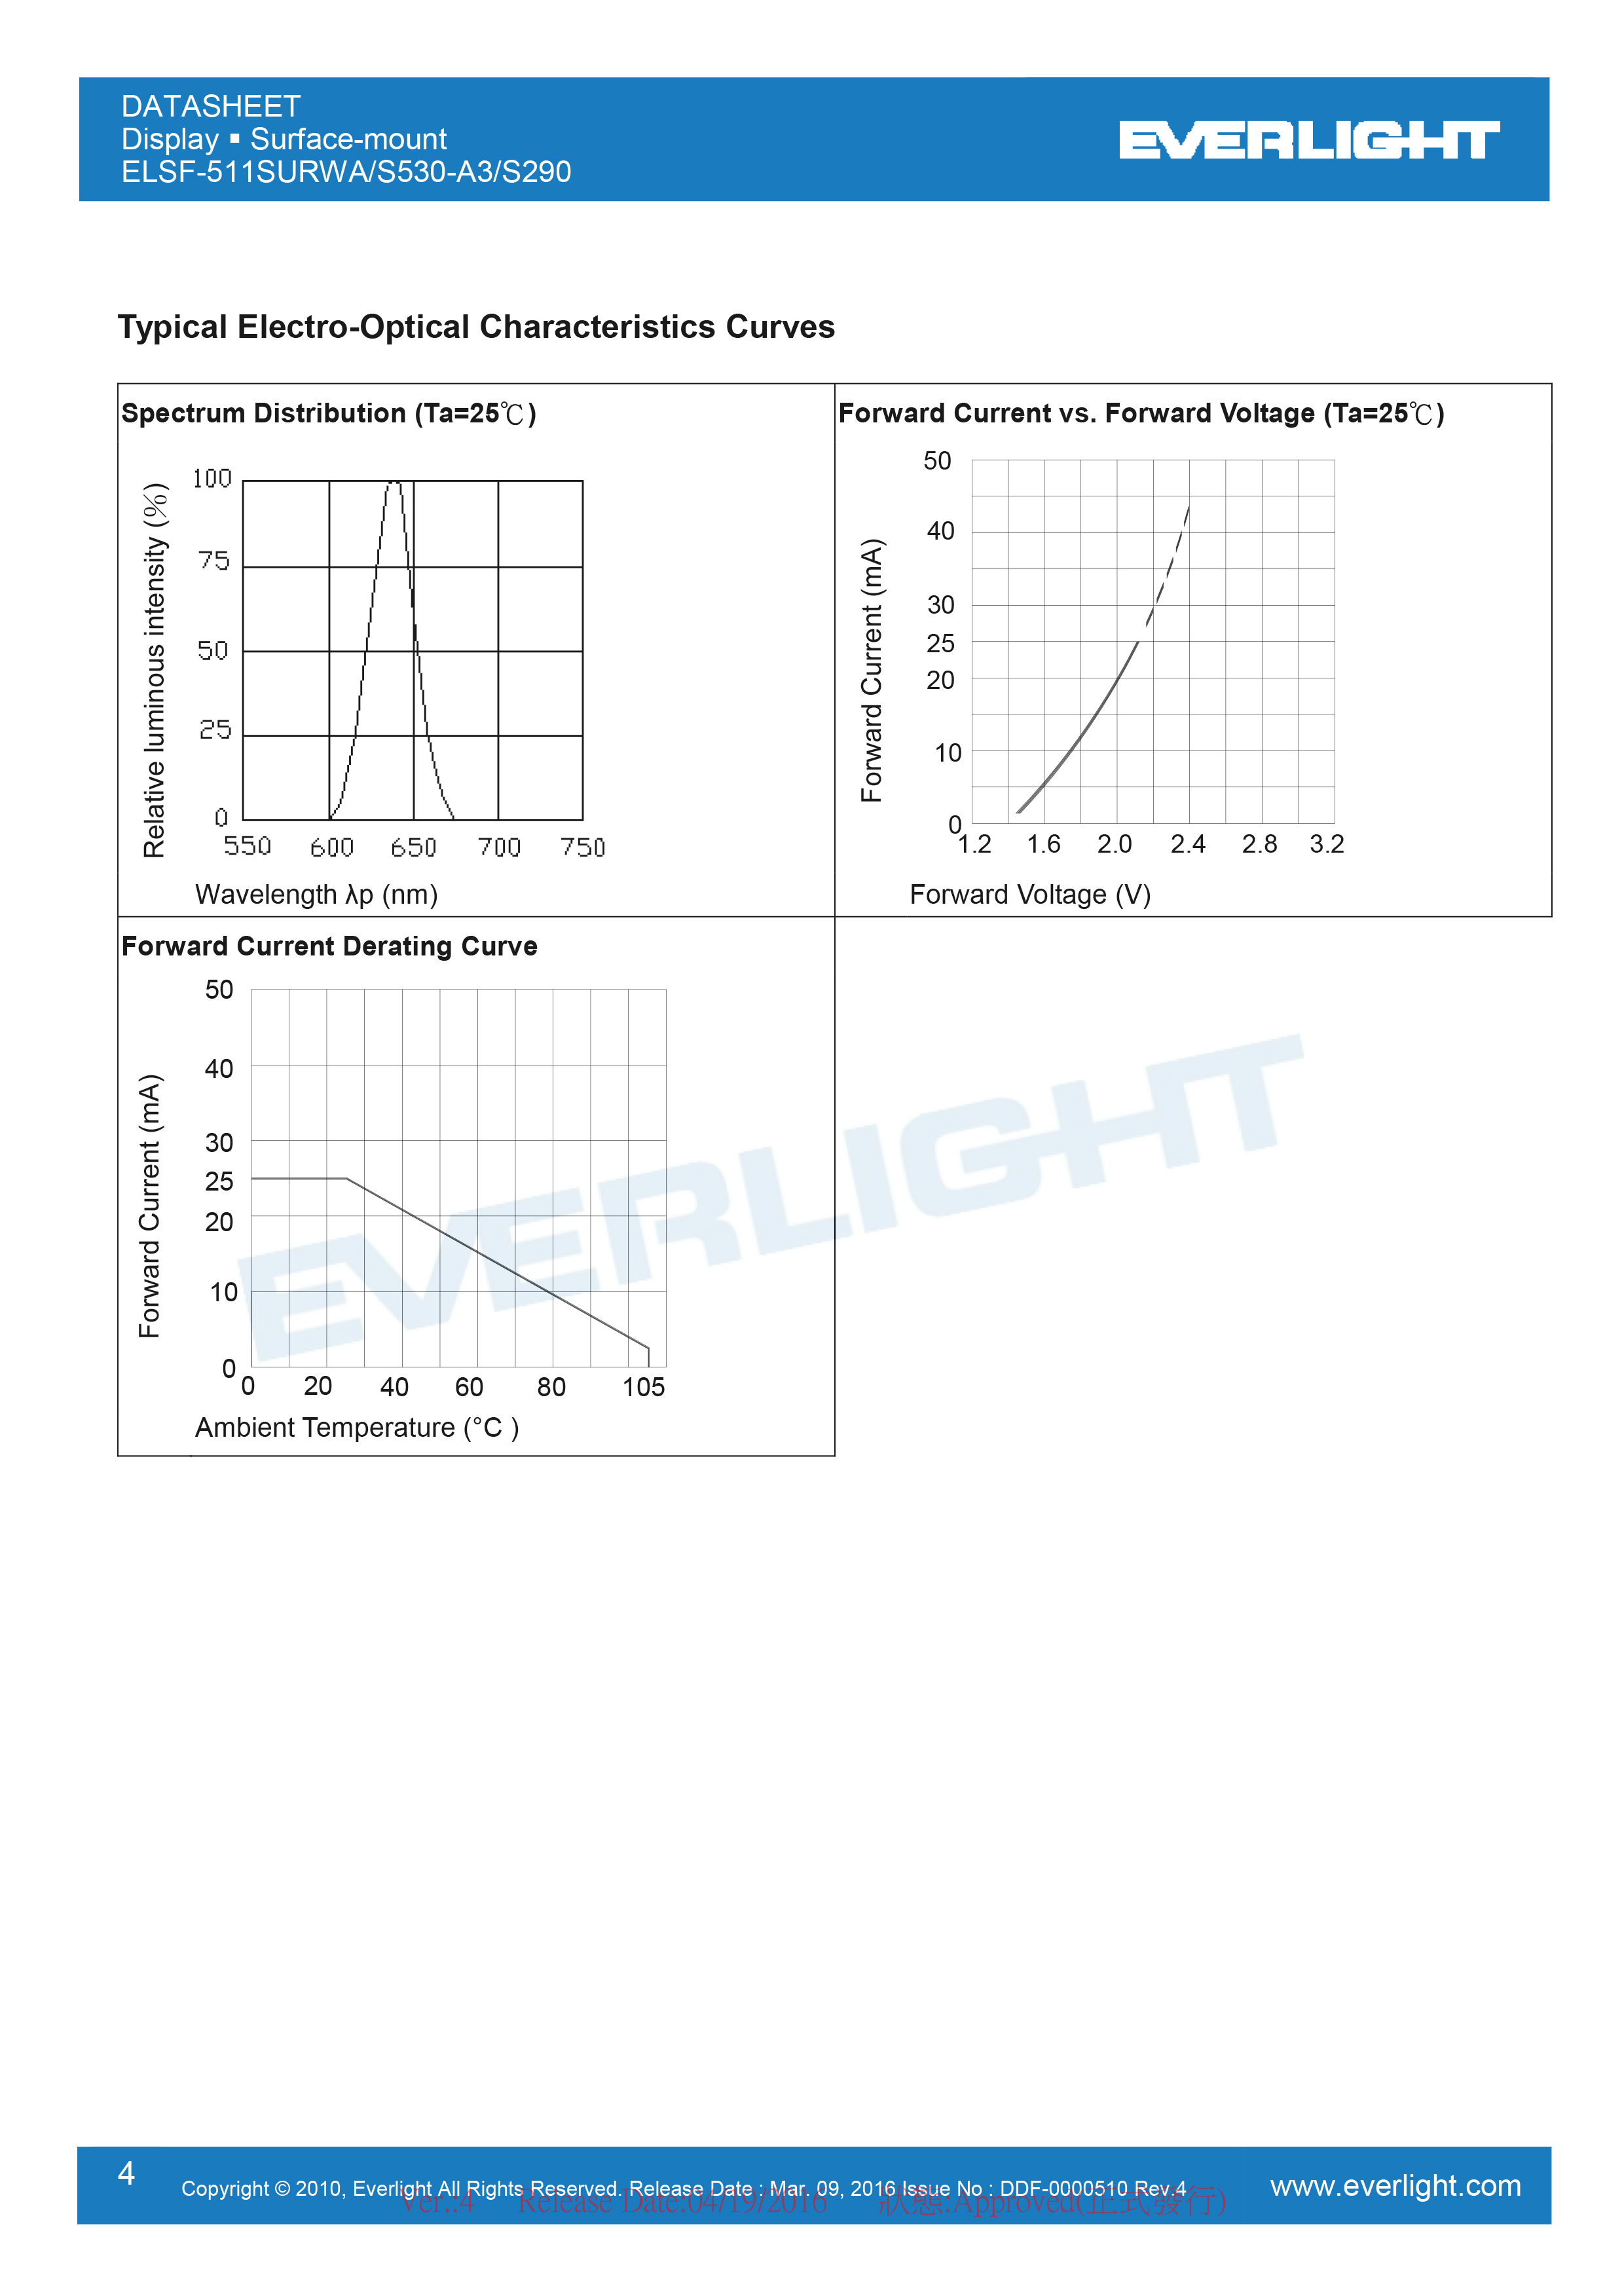 EVERLIGHT DIGITAL TUBE ELSF-511SURWA/S530-A3-S290 Datasheet